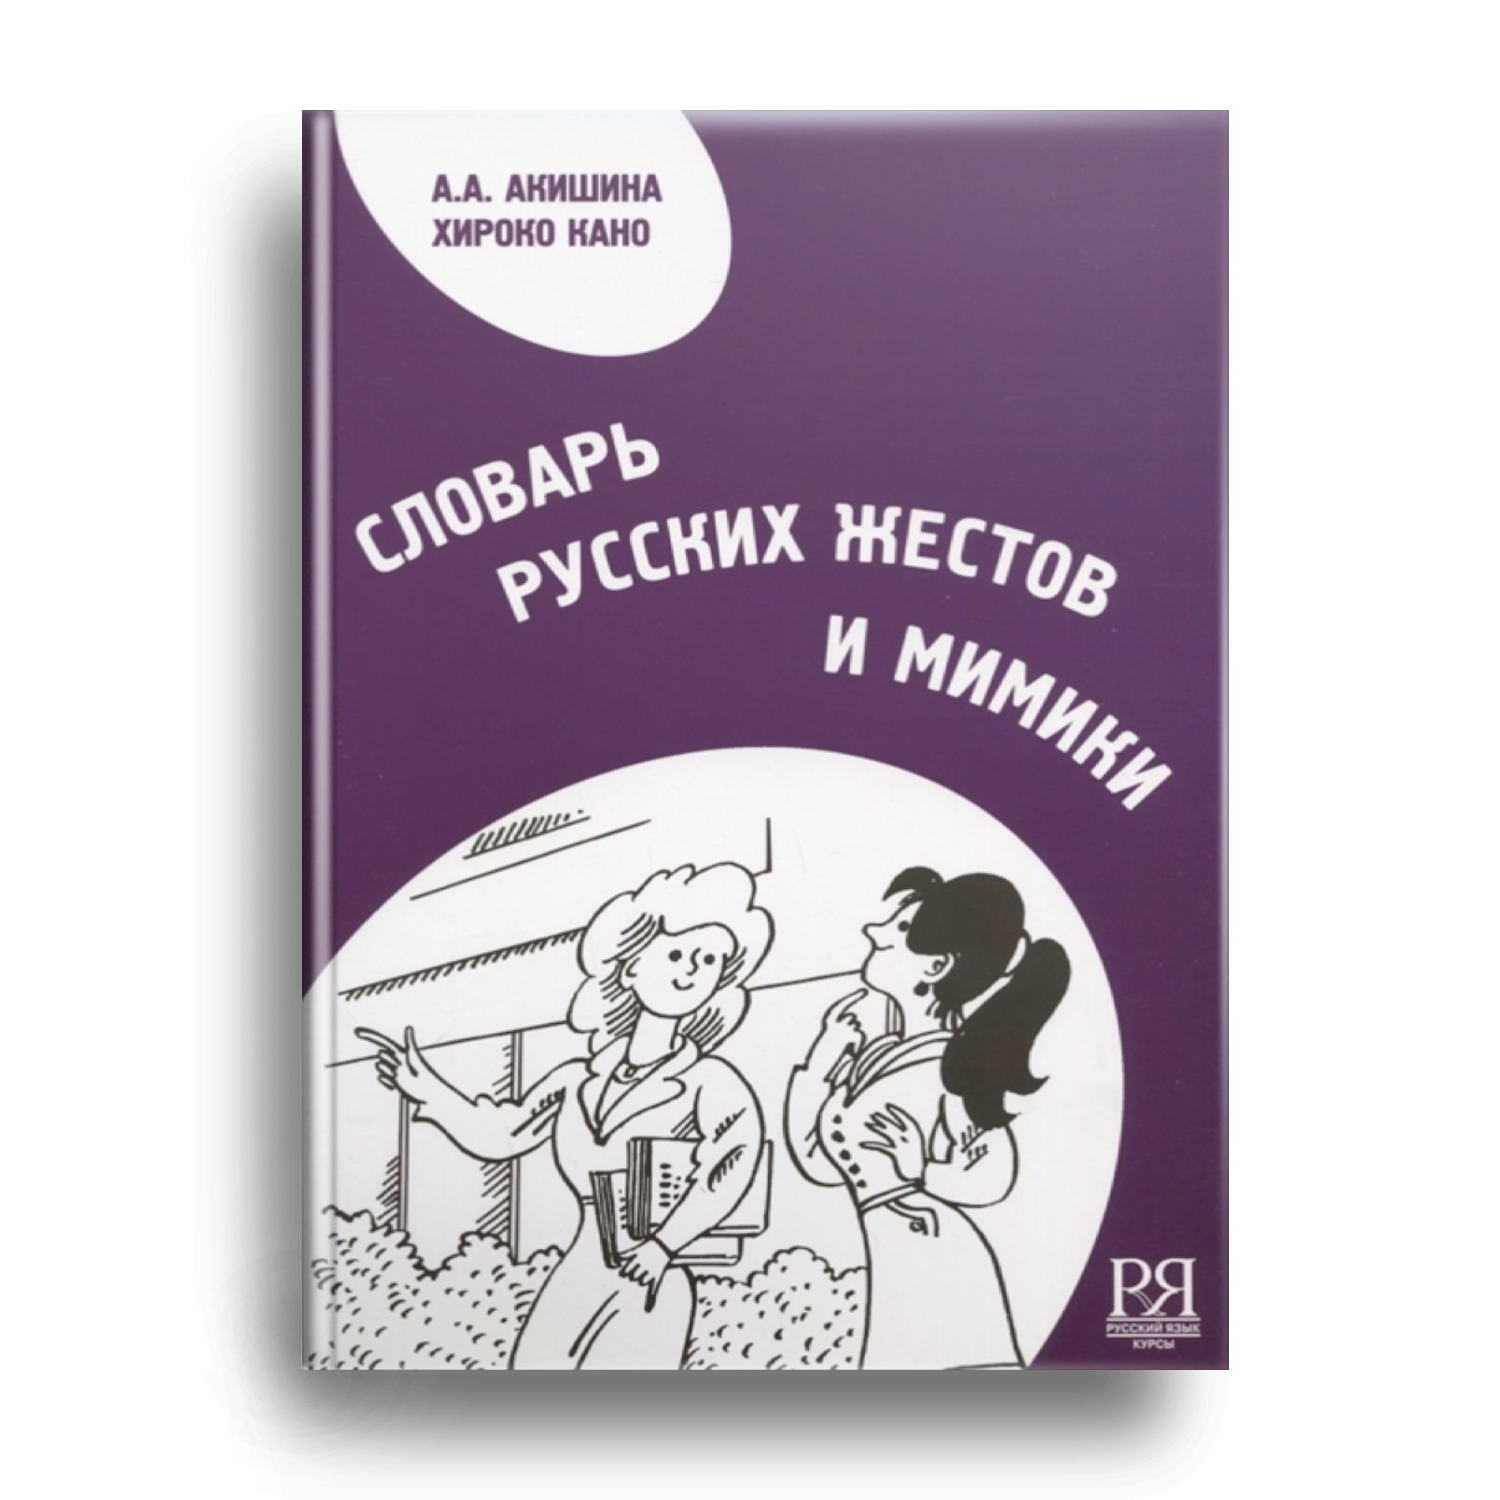 6. Словарь русских жестов и мимики